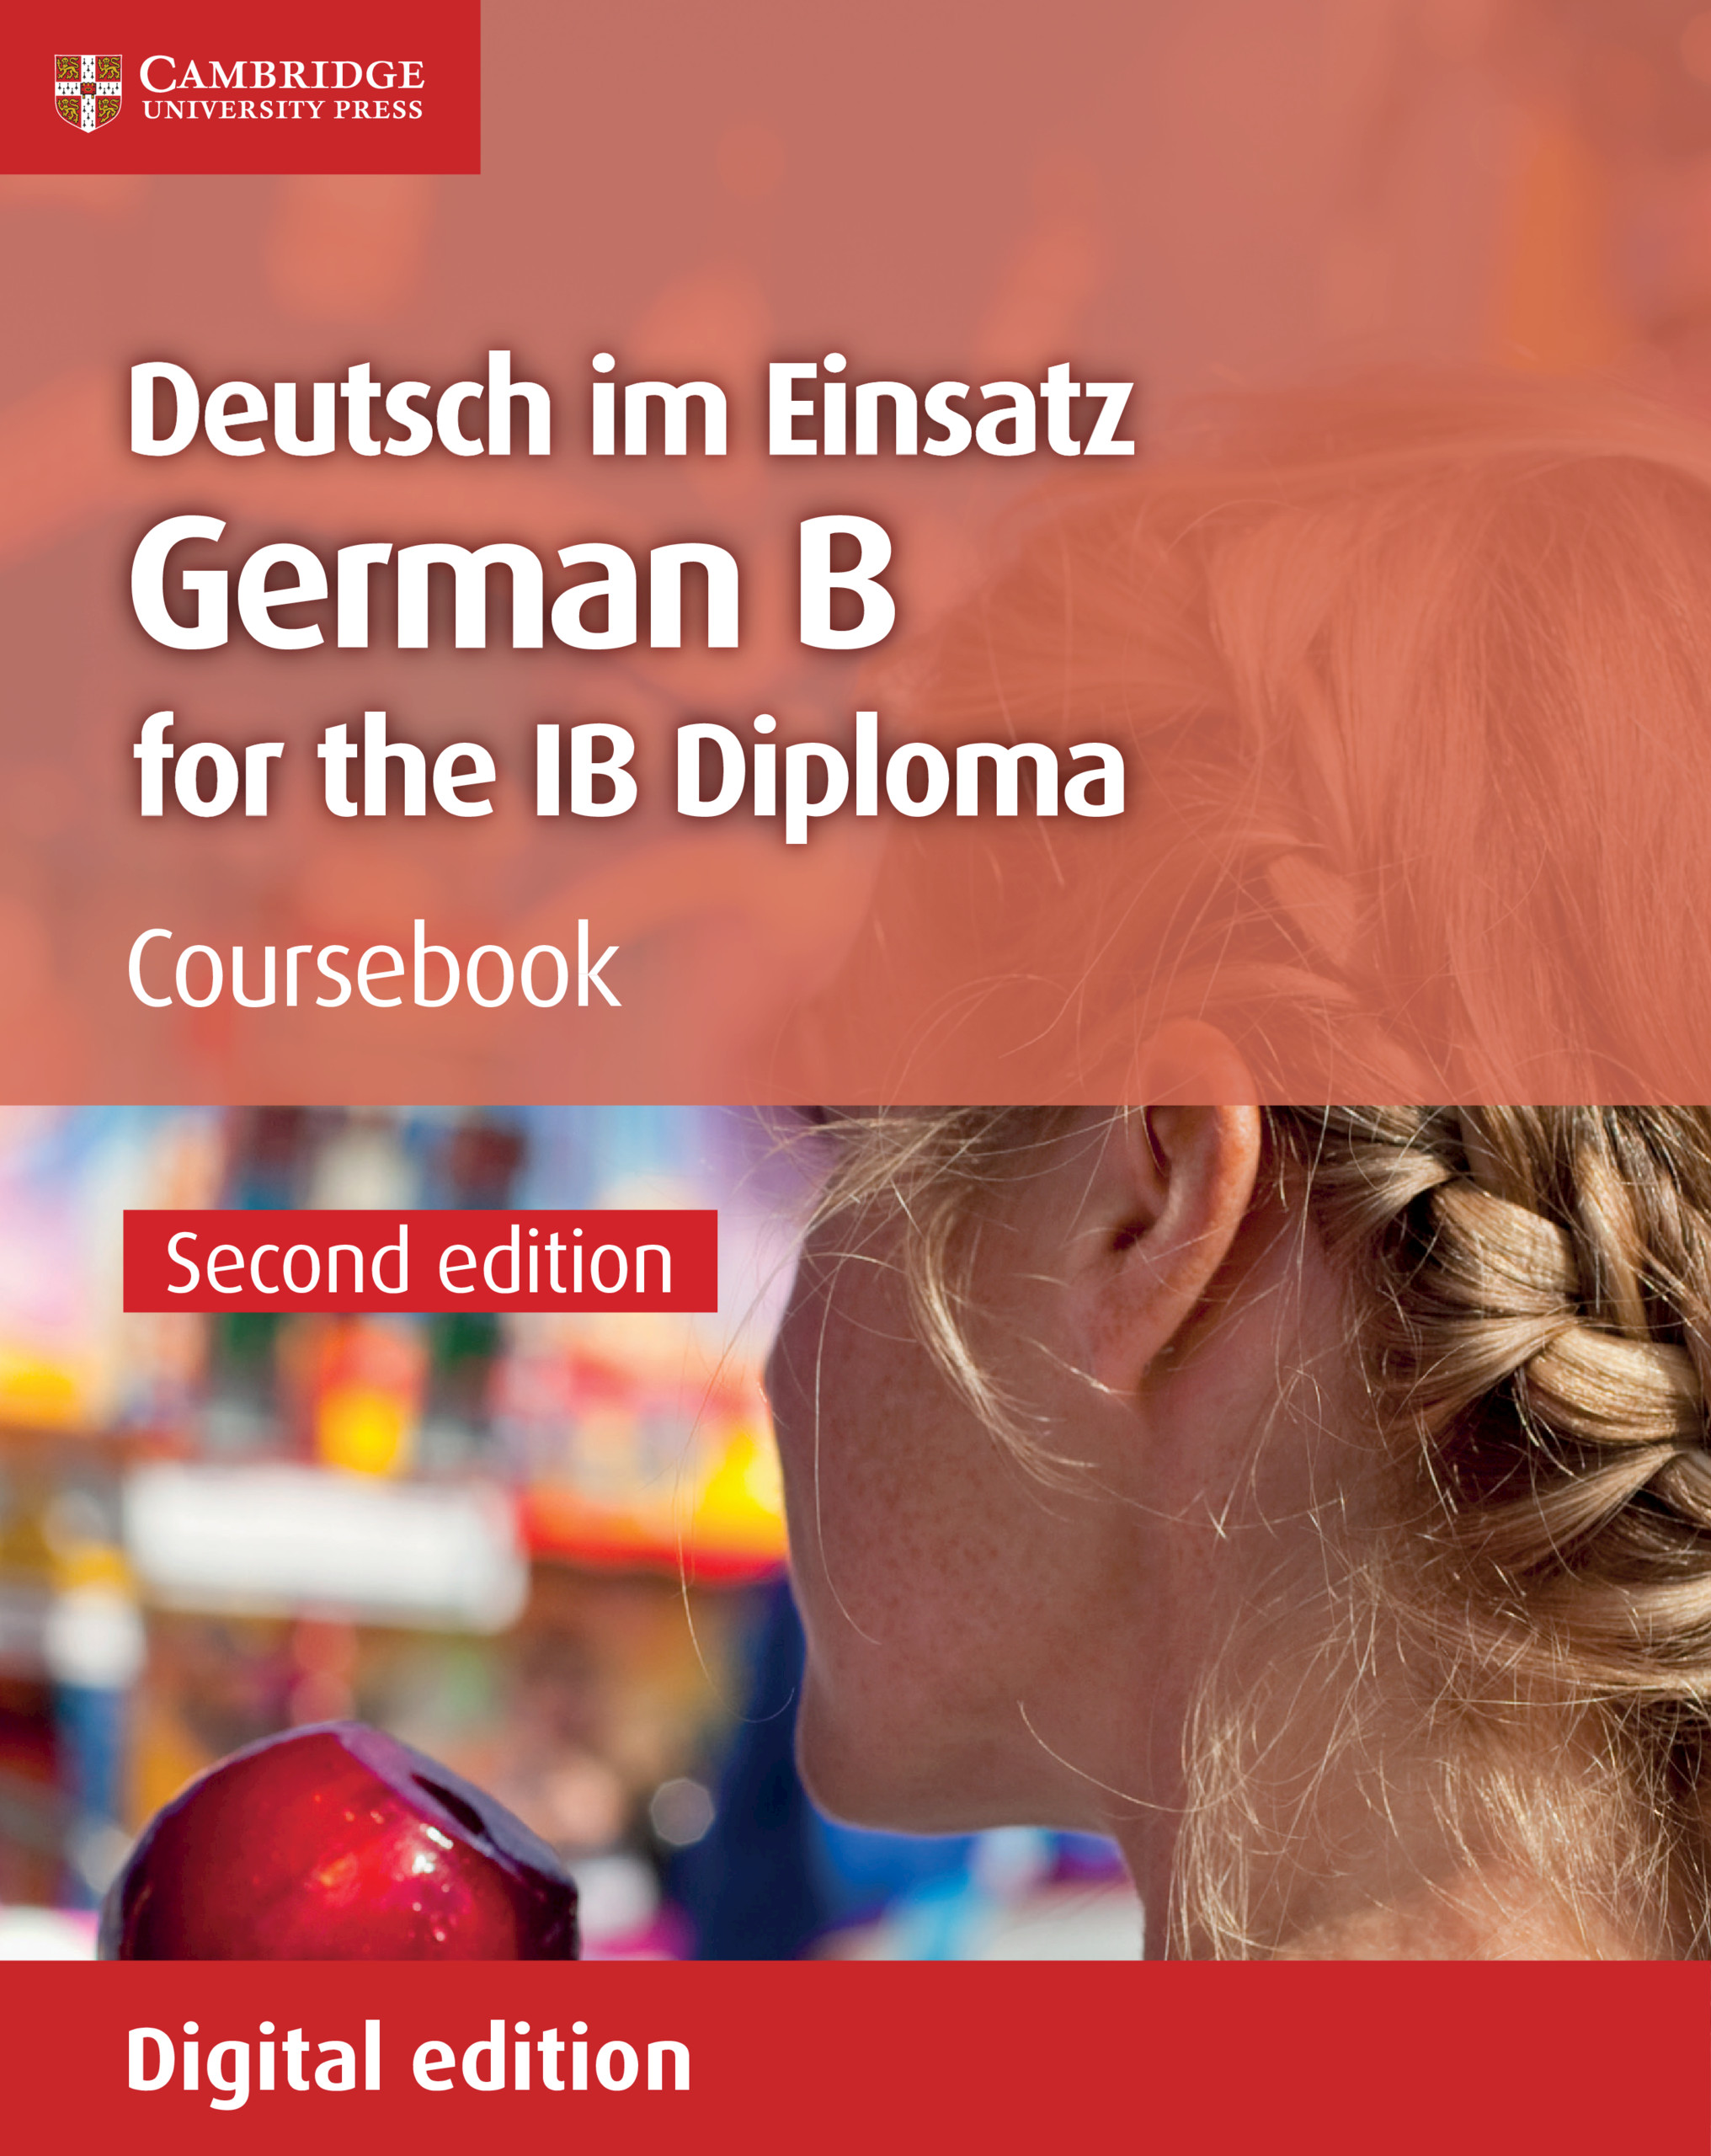 Deutsche im Einsatz German B for the IB Diploma